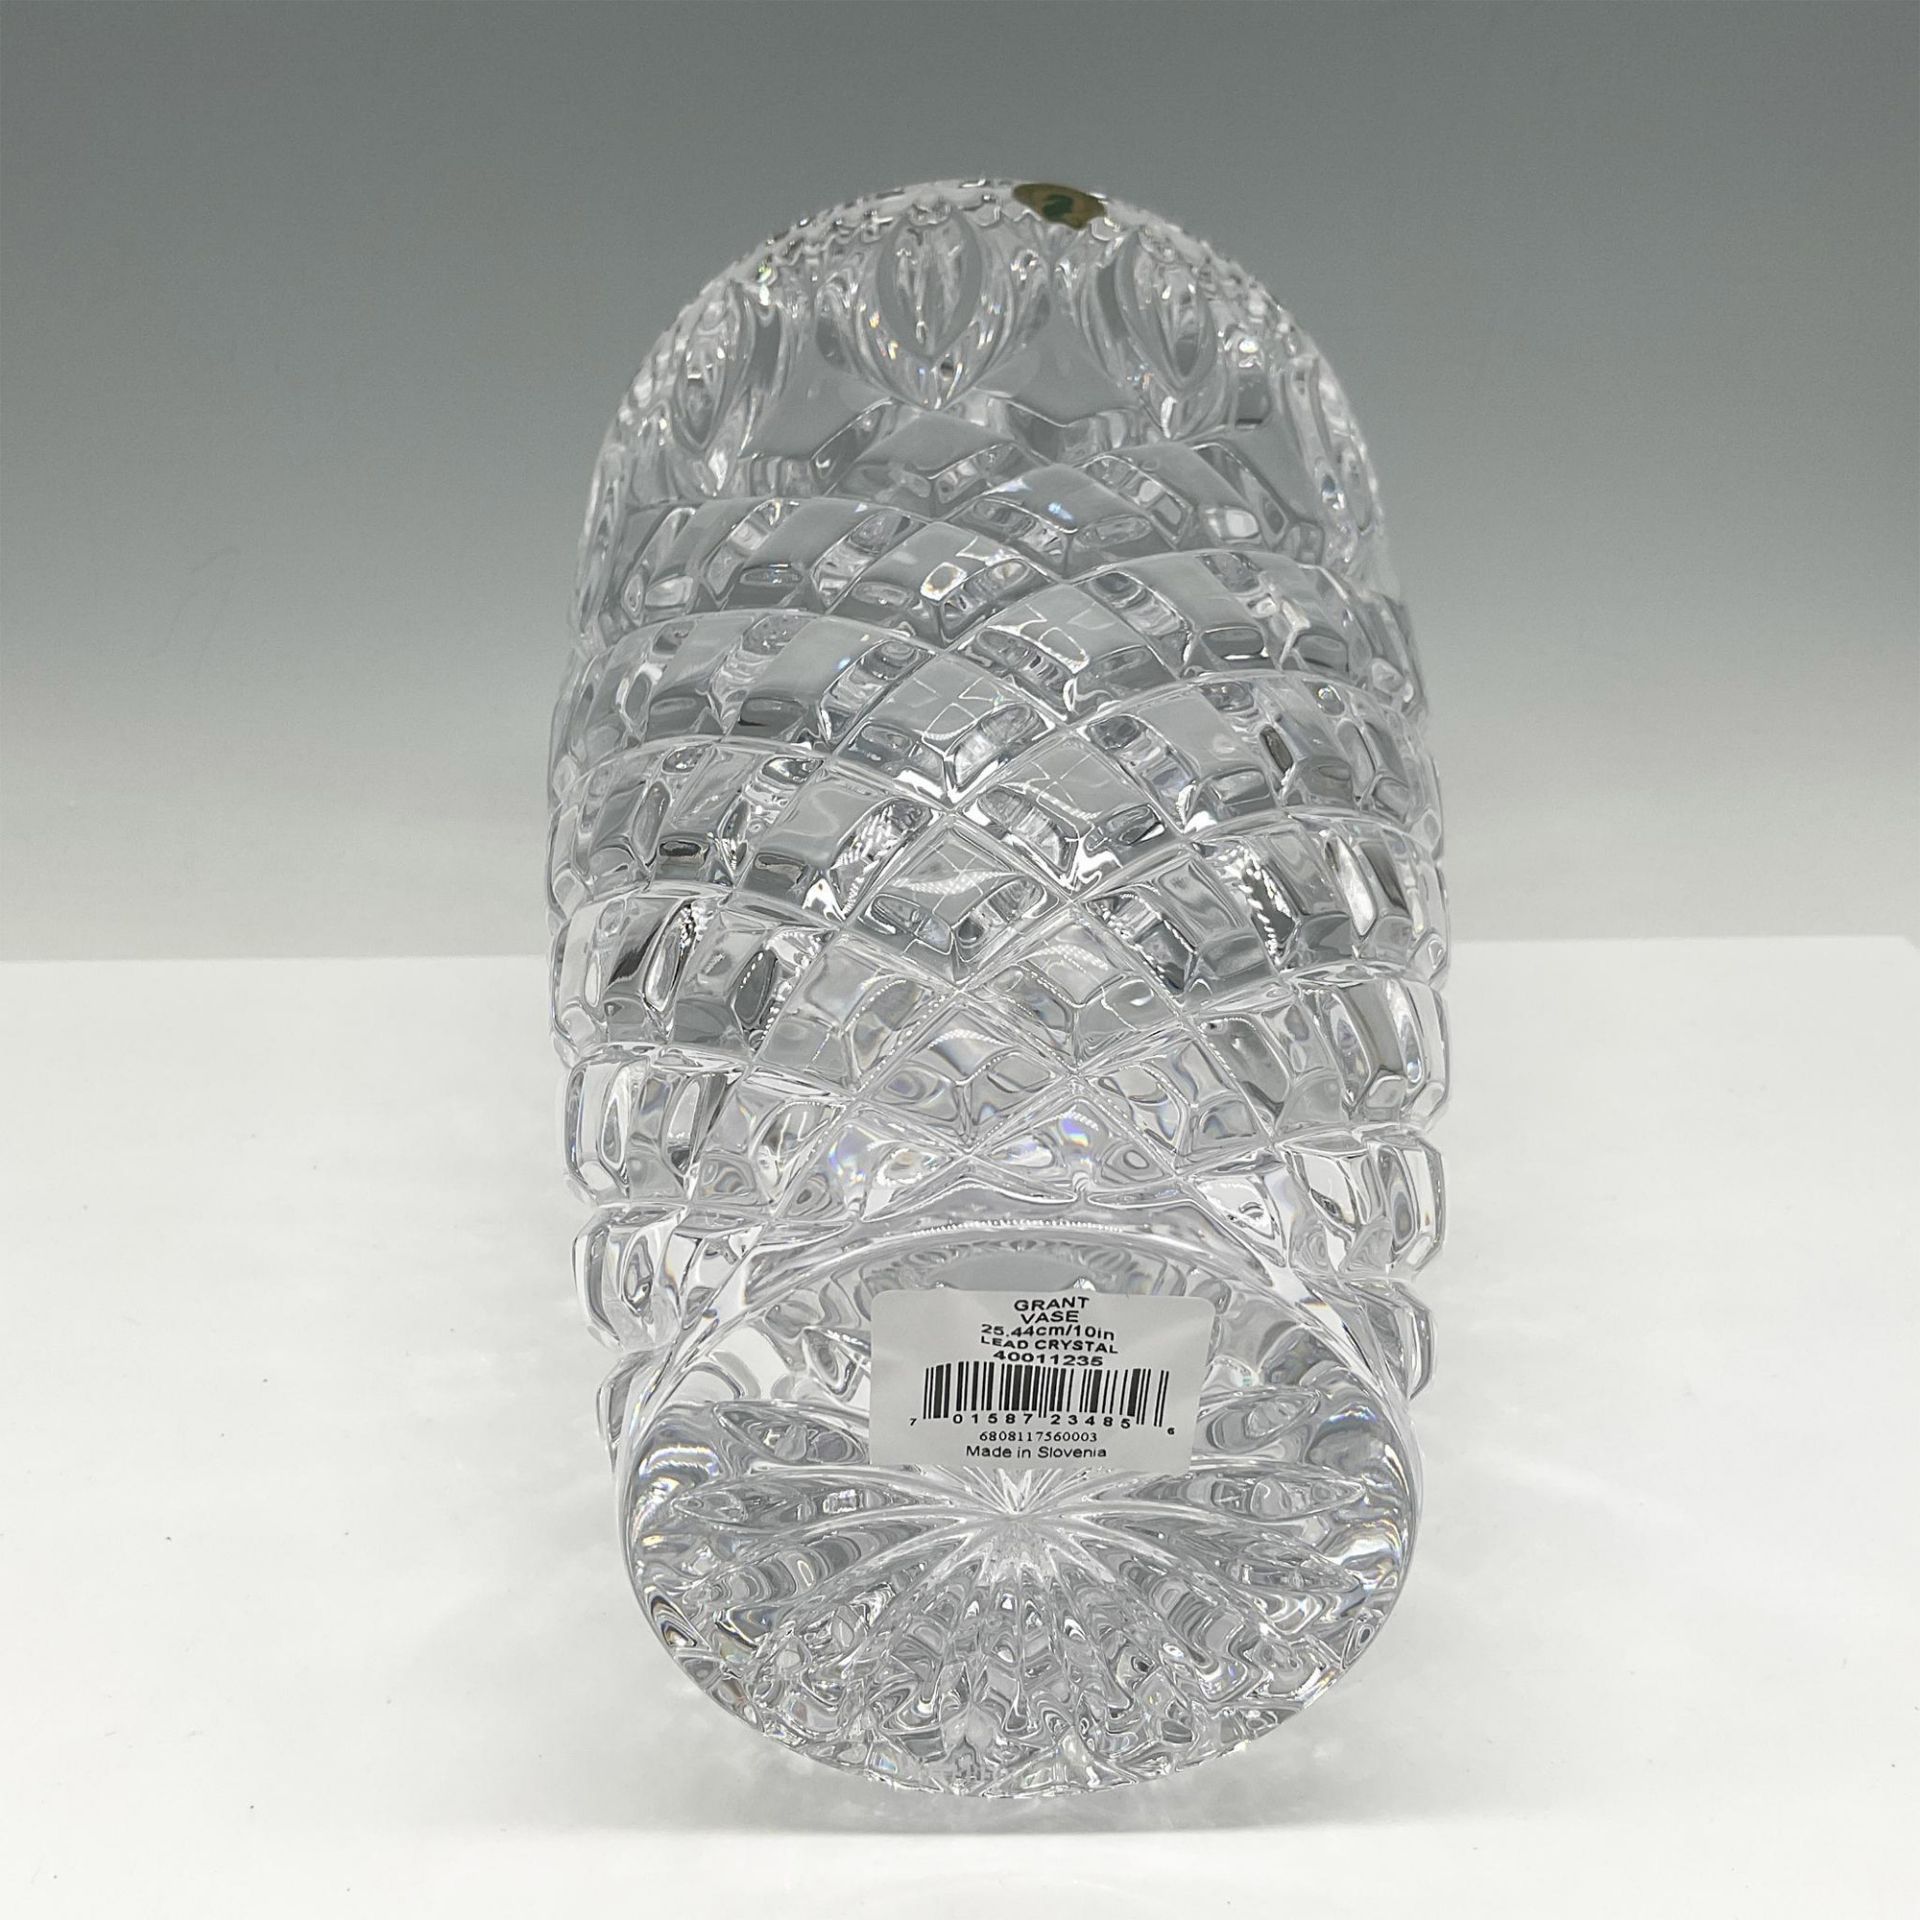 Waterford Crystal Grant Vase - Image 3 of 4